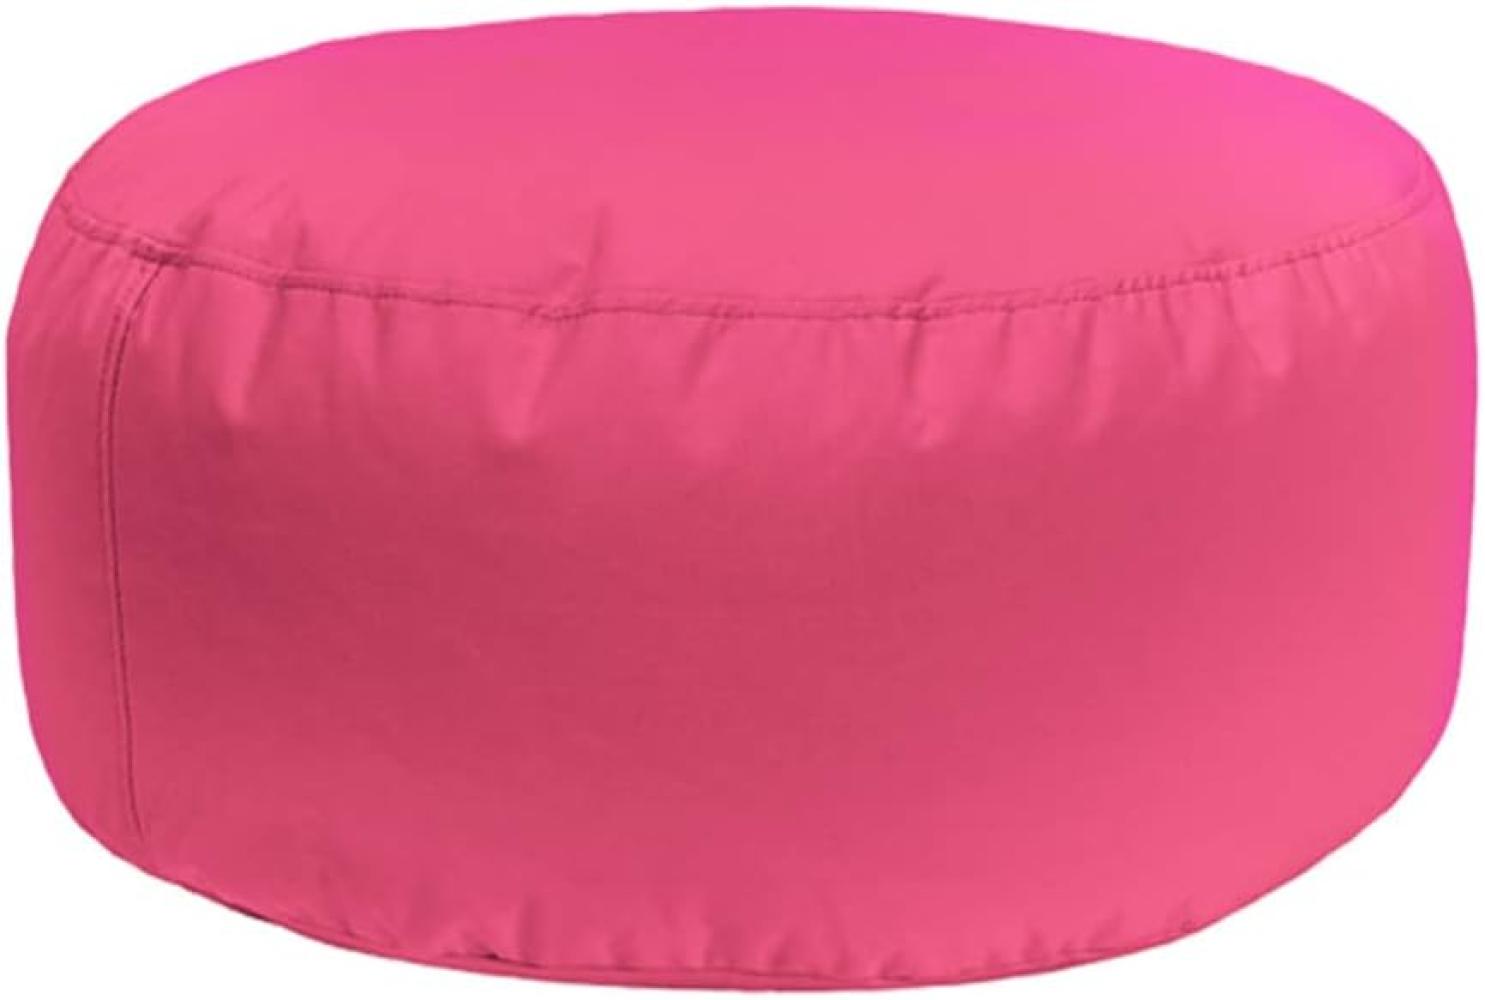 Bruni Pouf Sitzhocker L in Pink – runder Sitzpouf, Indoor und Outdoor als Fußhocker, Yoga-Sitzkissen, Meditationskissen geeignet Bild 1